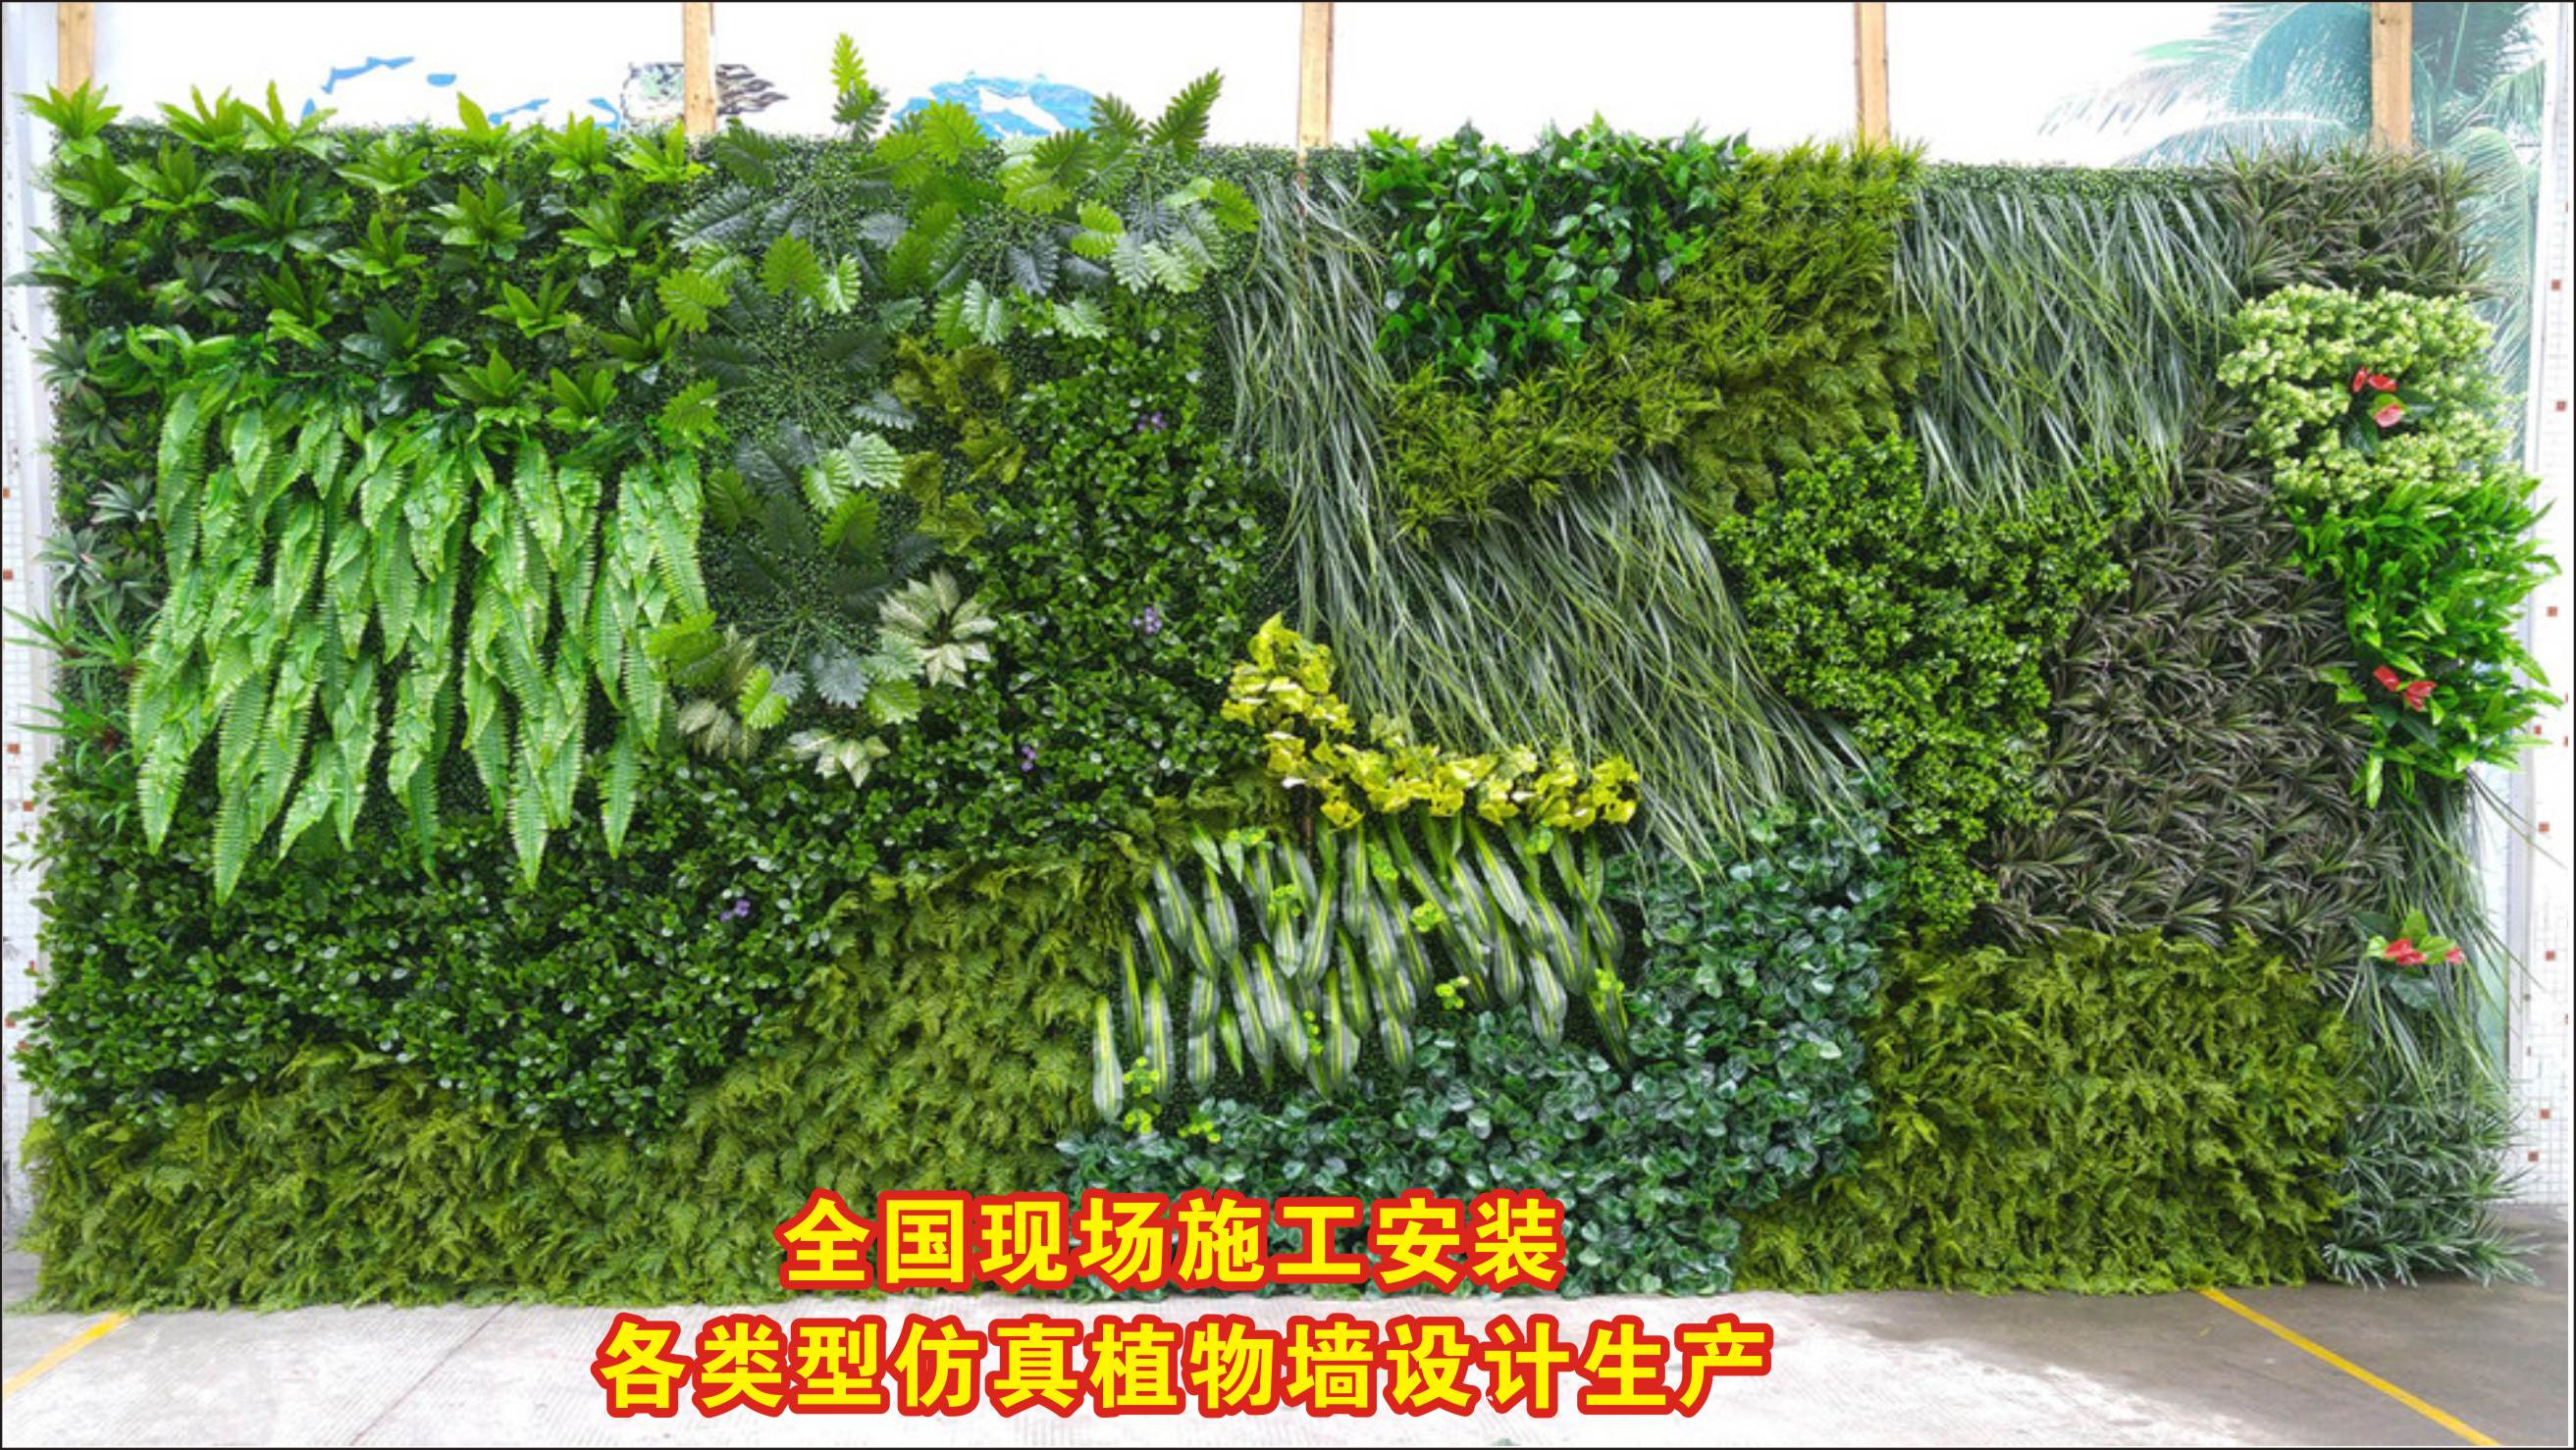 优质仿真绿植墙/墙体植物种类丰富,防晒/阻燃，按需设计生产施工约300.00元(图18)